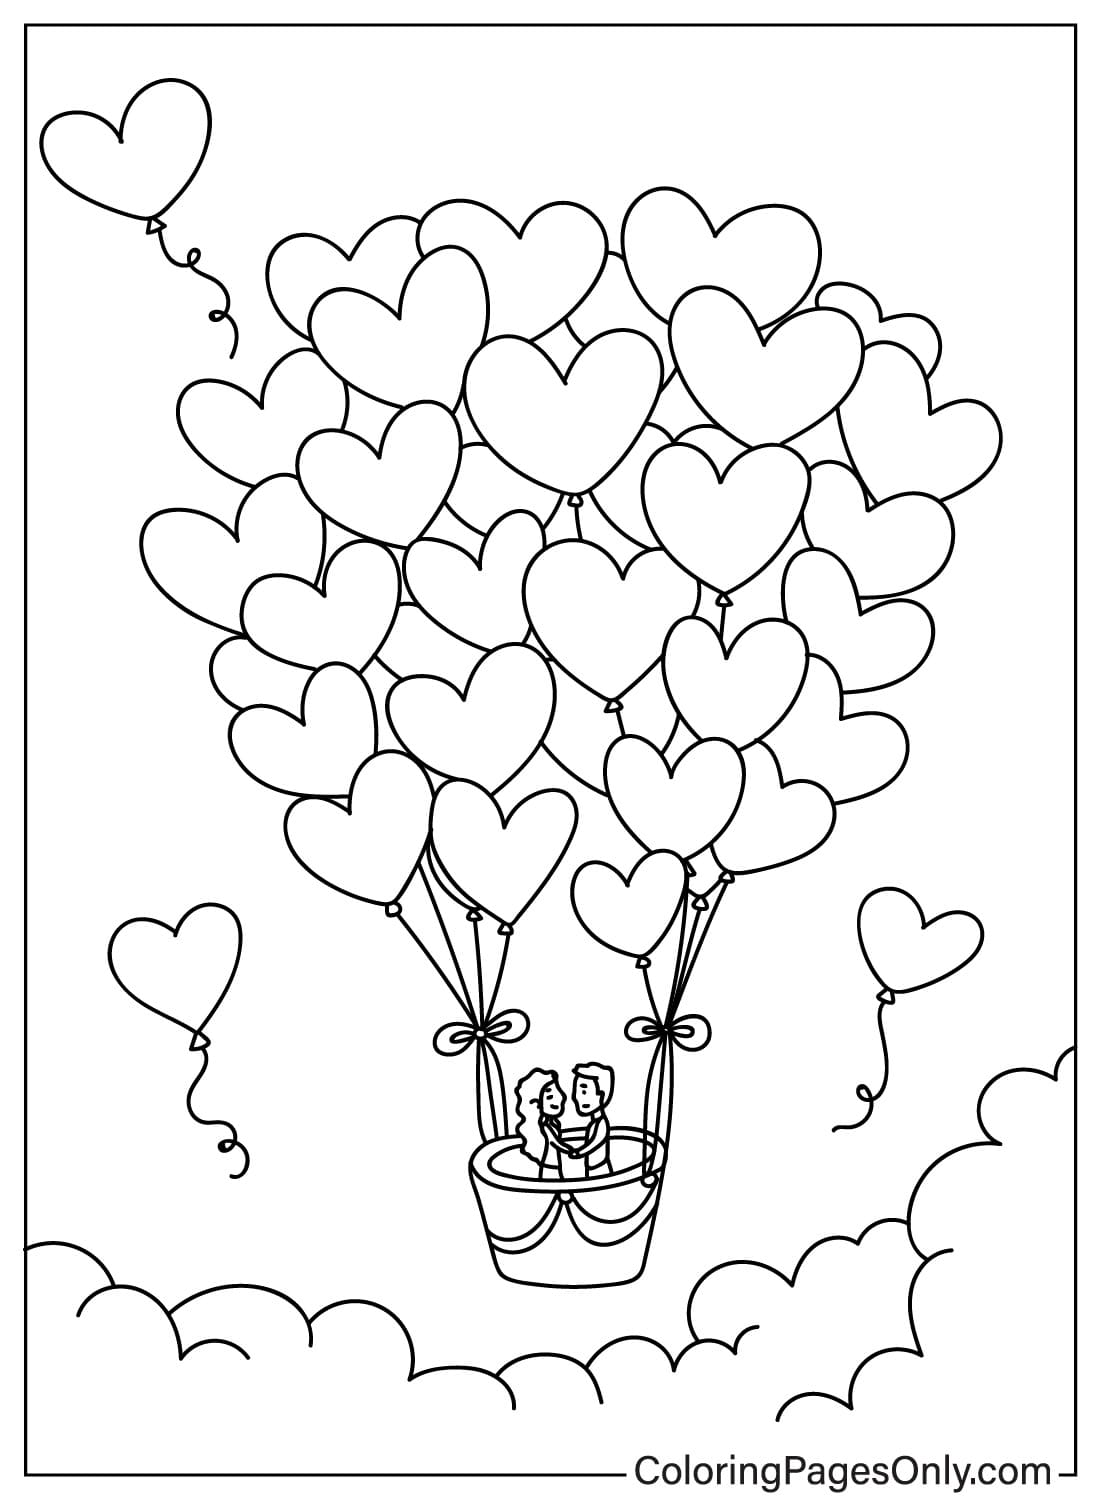 Pagina da colorare di palloncini a forma di cuore dal cuore